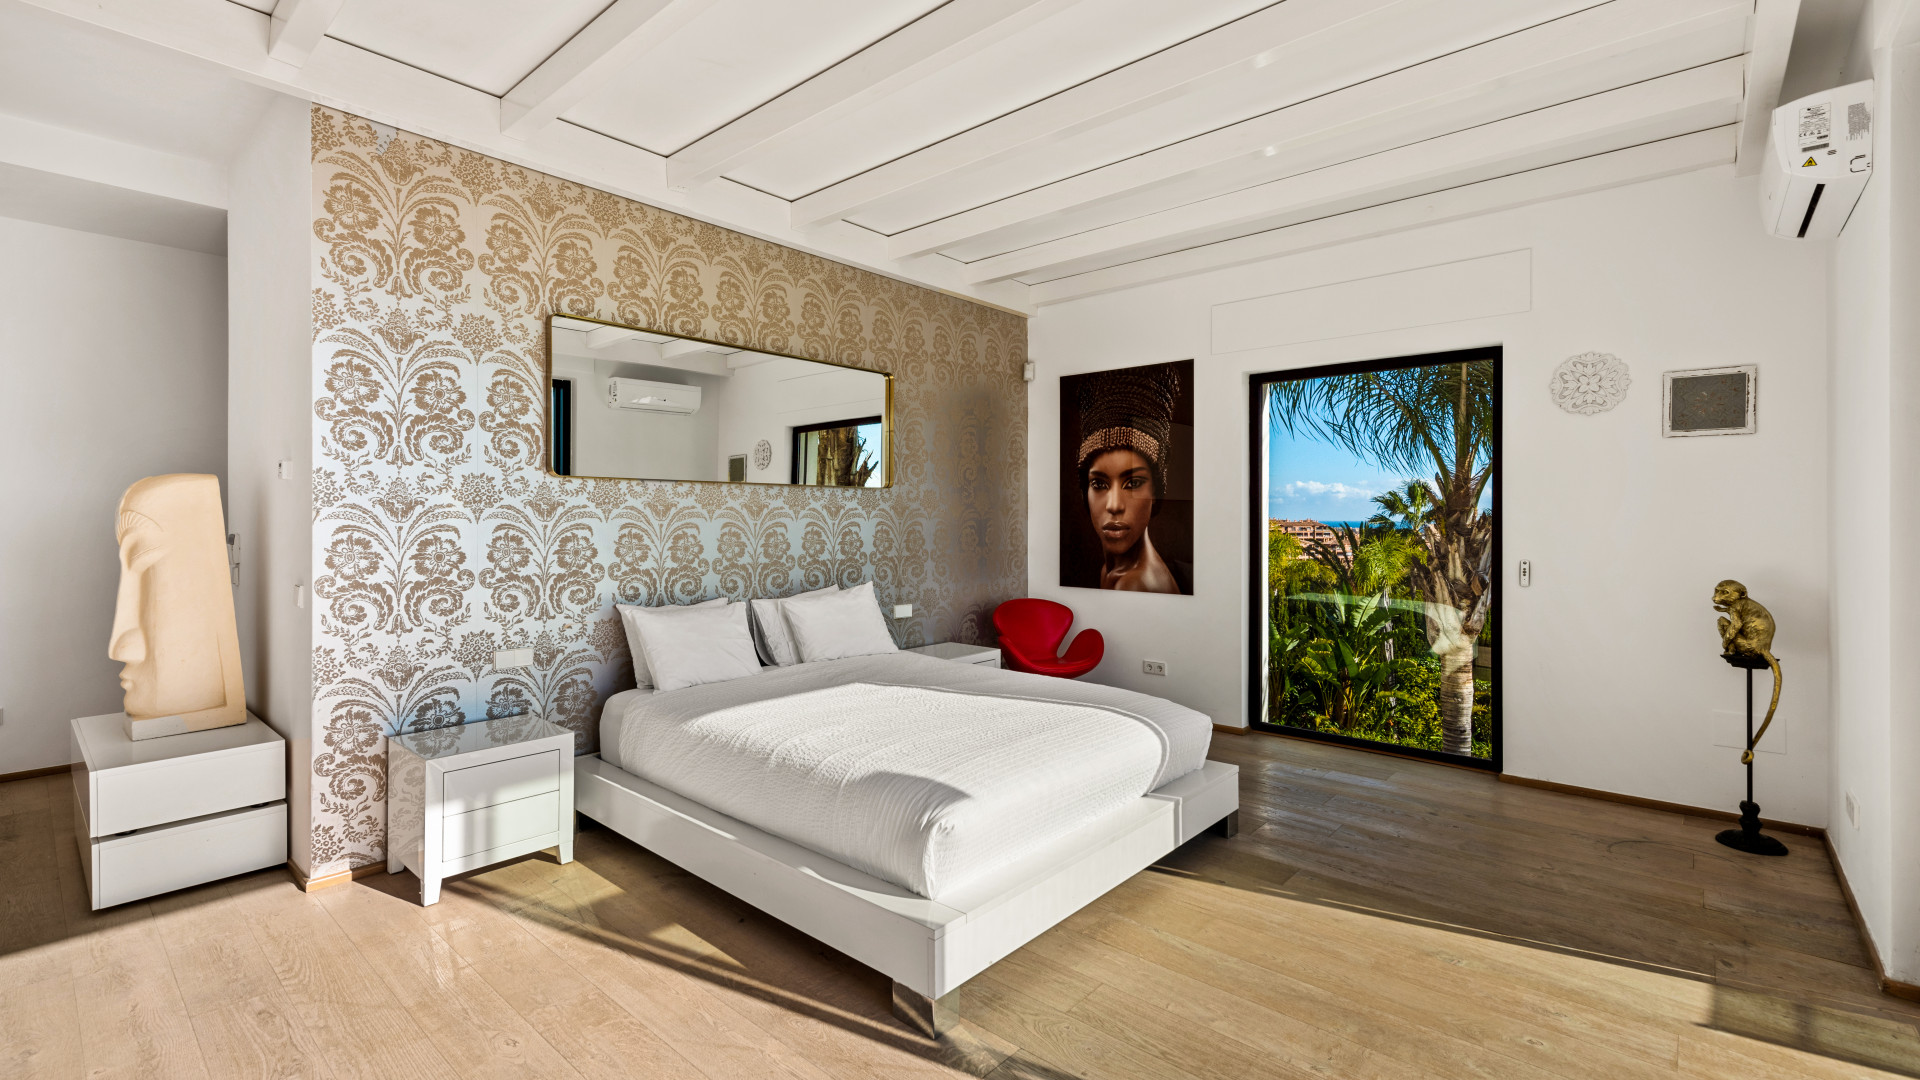 Villa moderna de lujo con impresionantes vistas panorámicas en La Alquería, Benahavís.